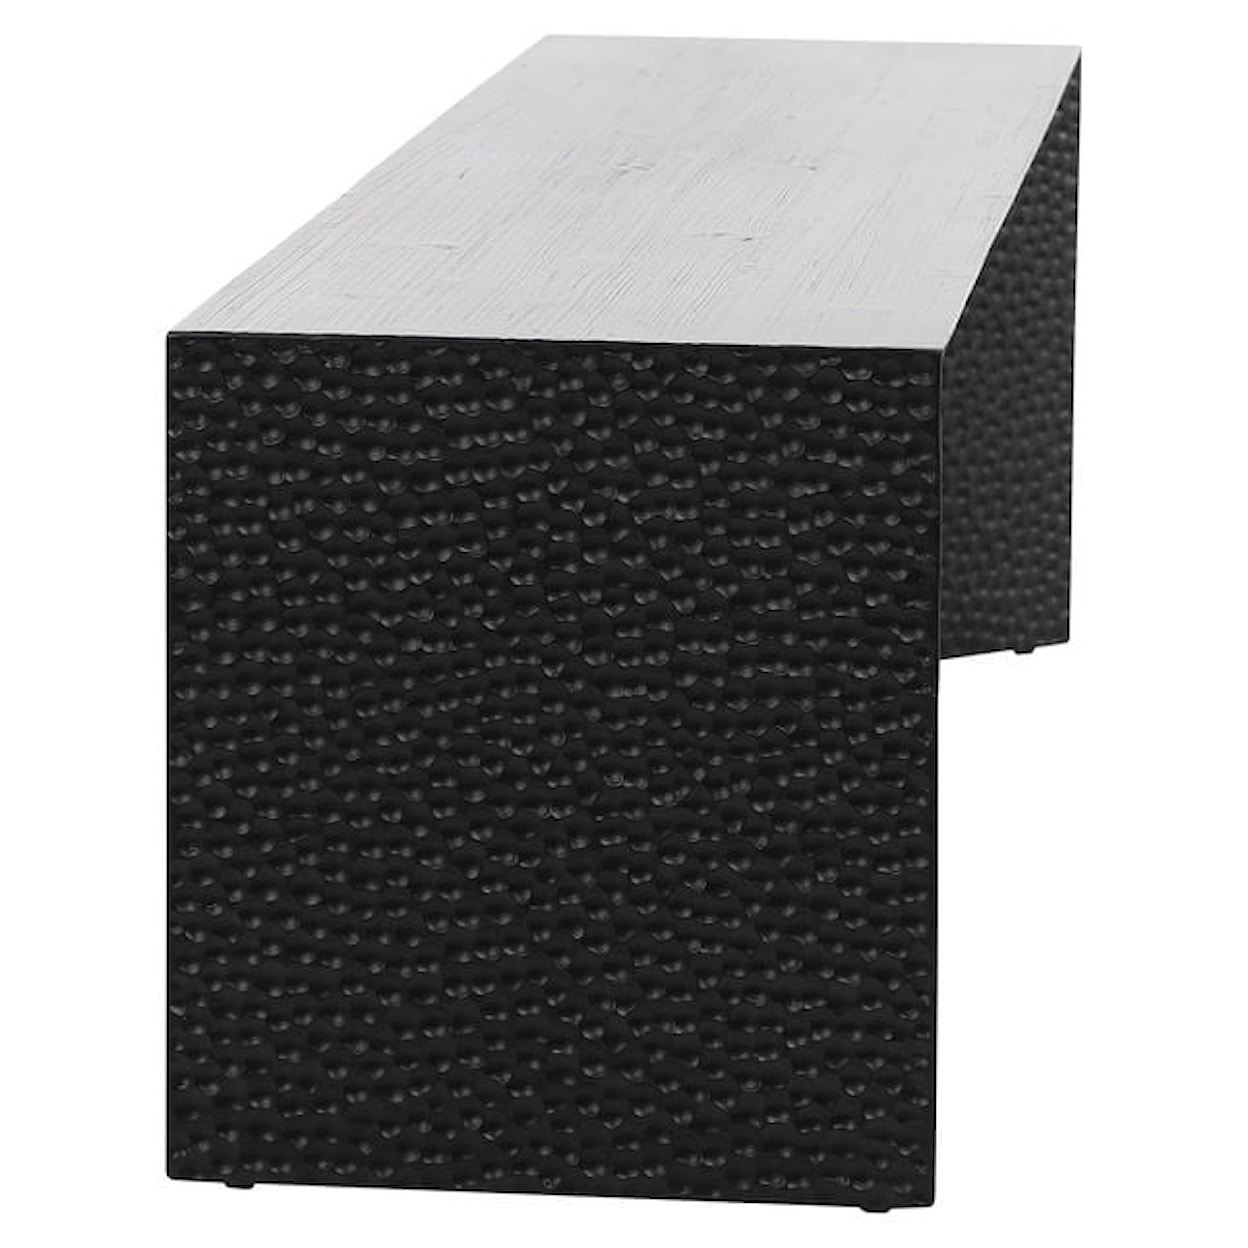 Dovetail Furniture Orbina Orbina Bench